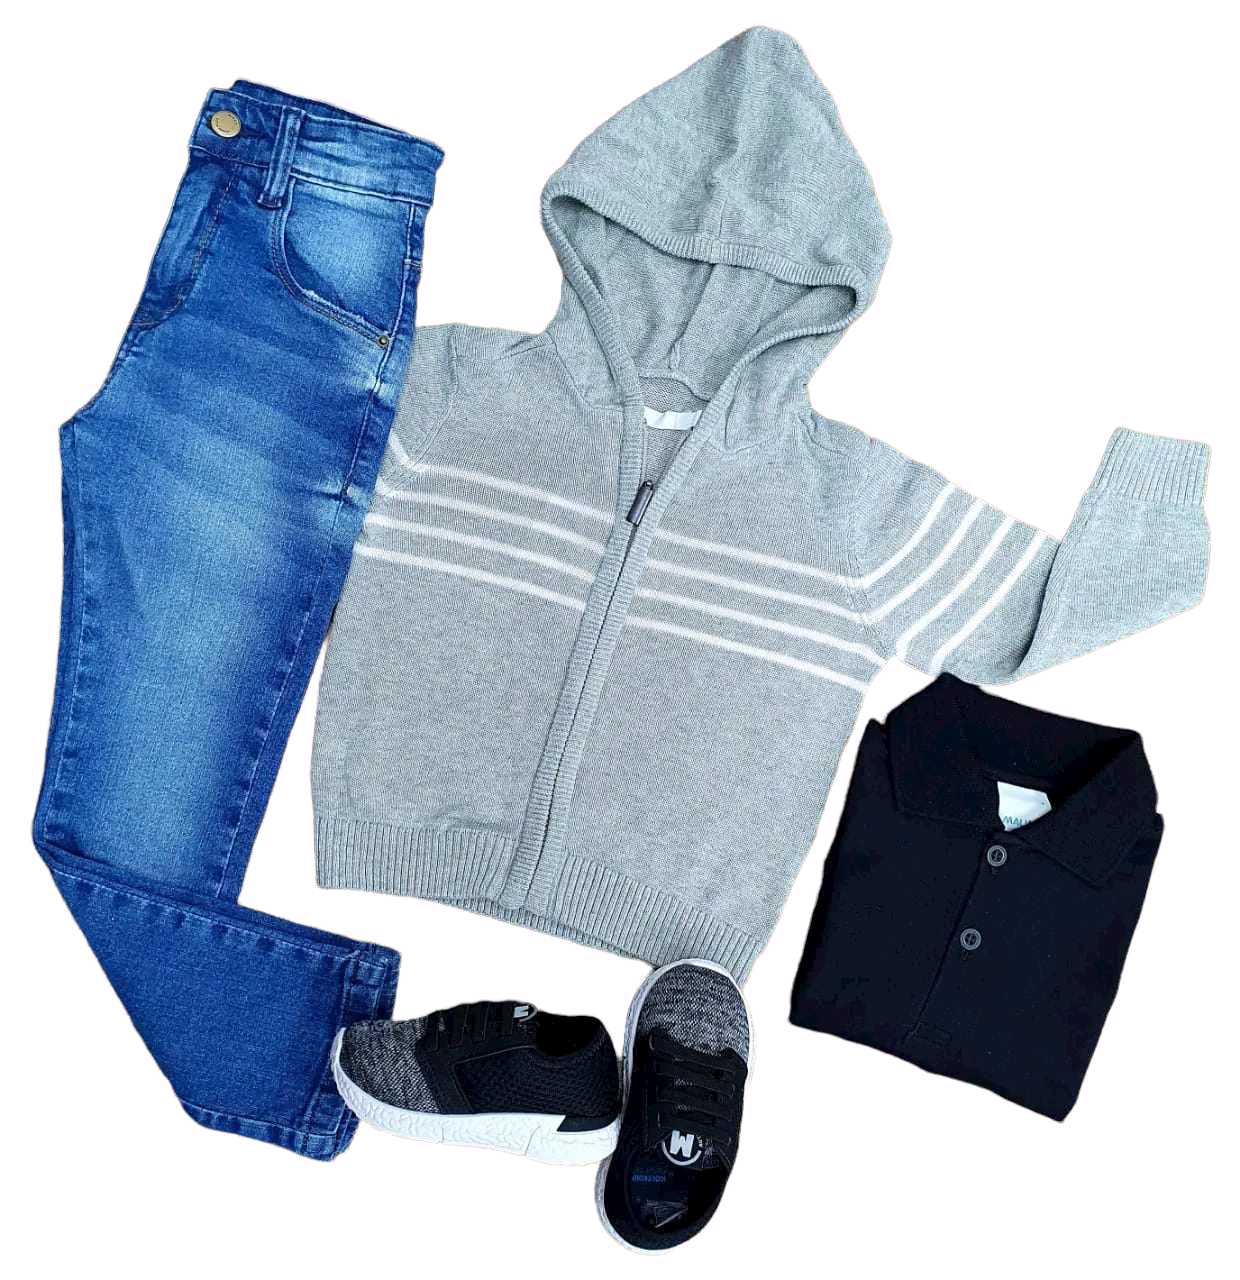 Calça Jeans com Polo e Jaqueta Cinza  - Lojinha da Vivi